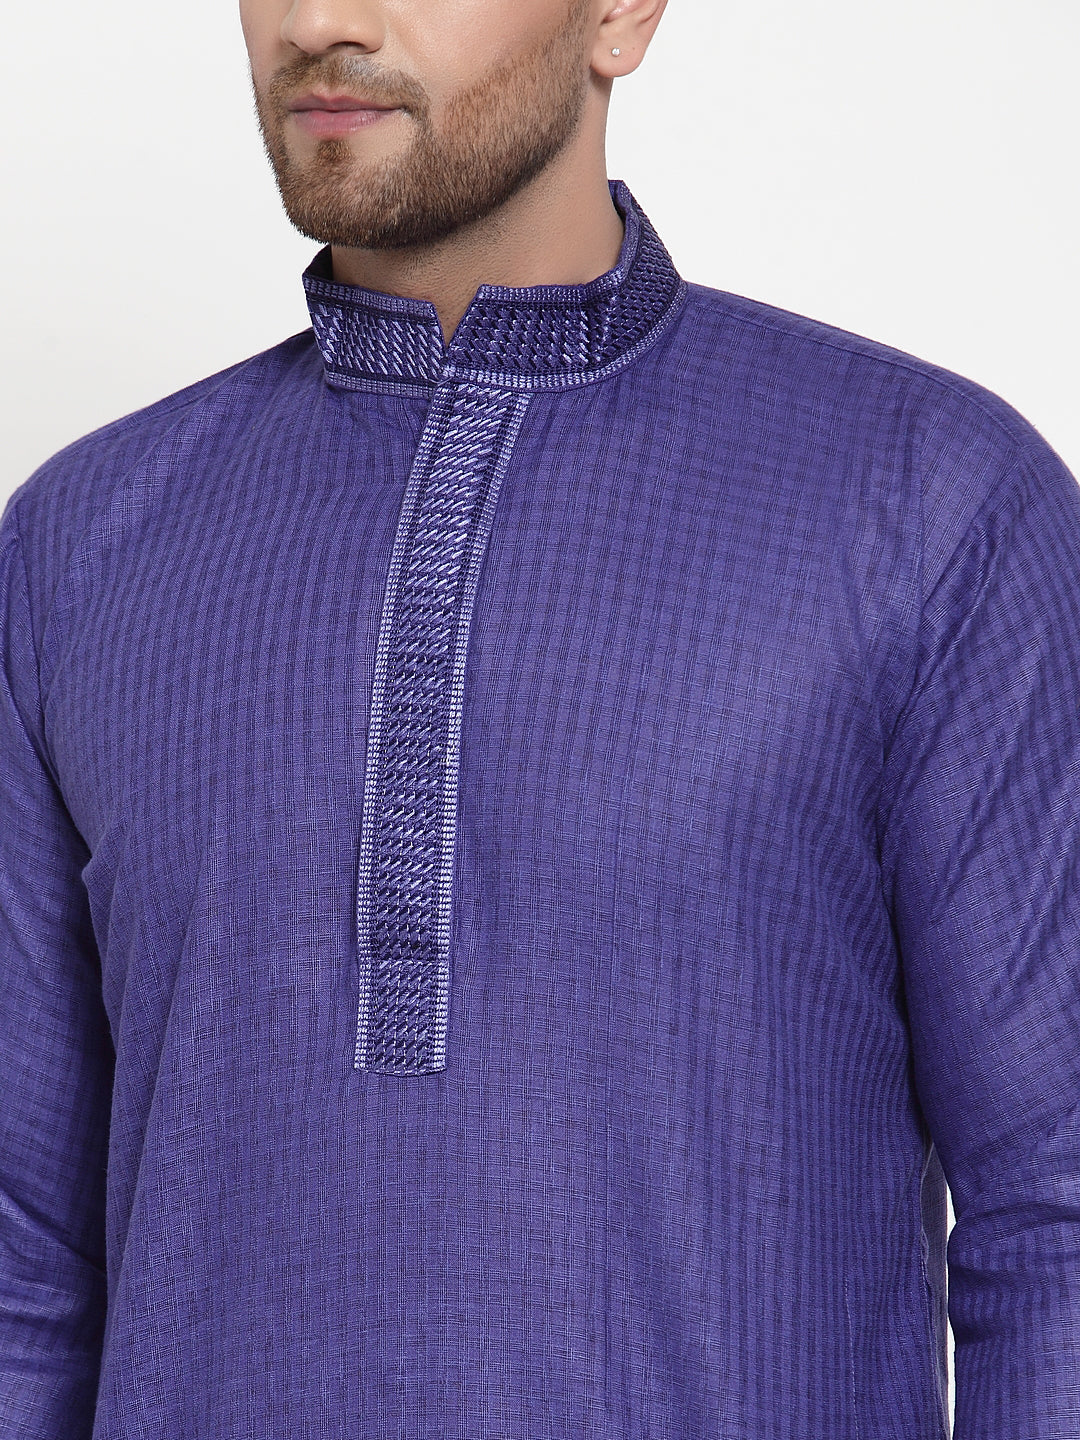 Jompers Men's Purple Woven Kurta Payjama Sets